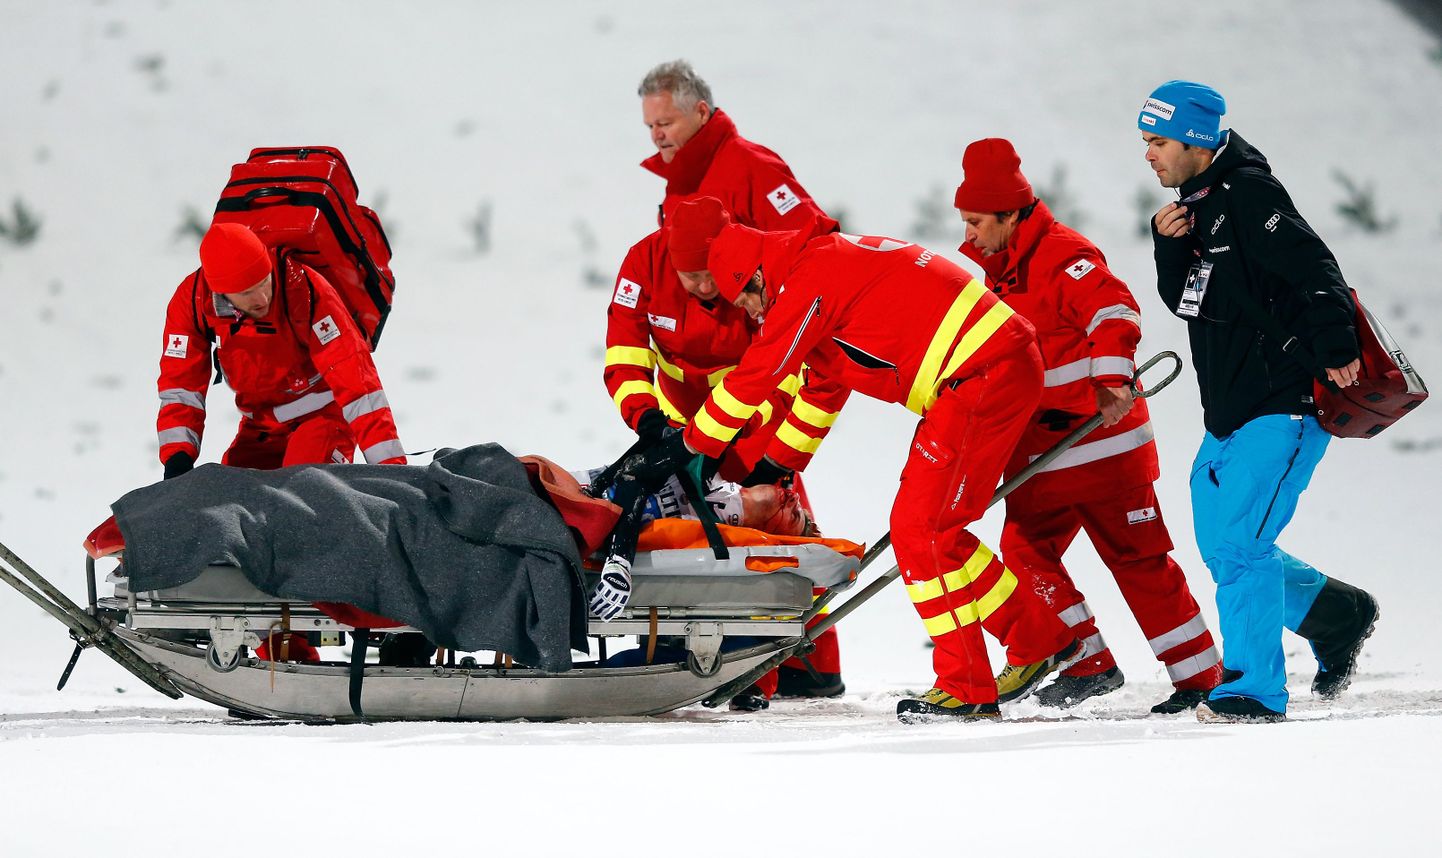 Šveitslasest mitmekordne olümpiavõitja Simon Ammann kukkus nelja hüppemäe turnee lõpuetapil raskelt ja viidi haiglasse.